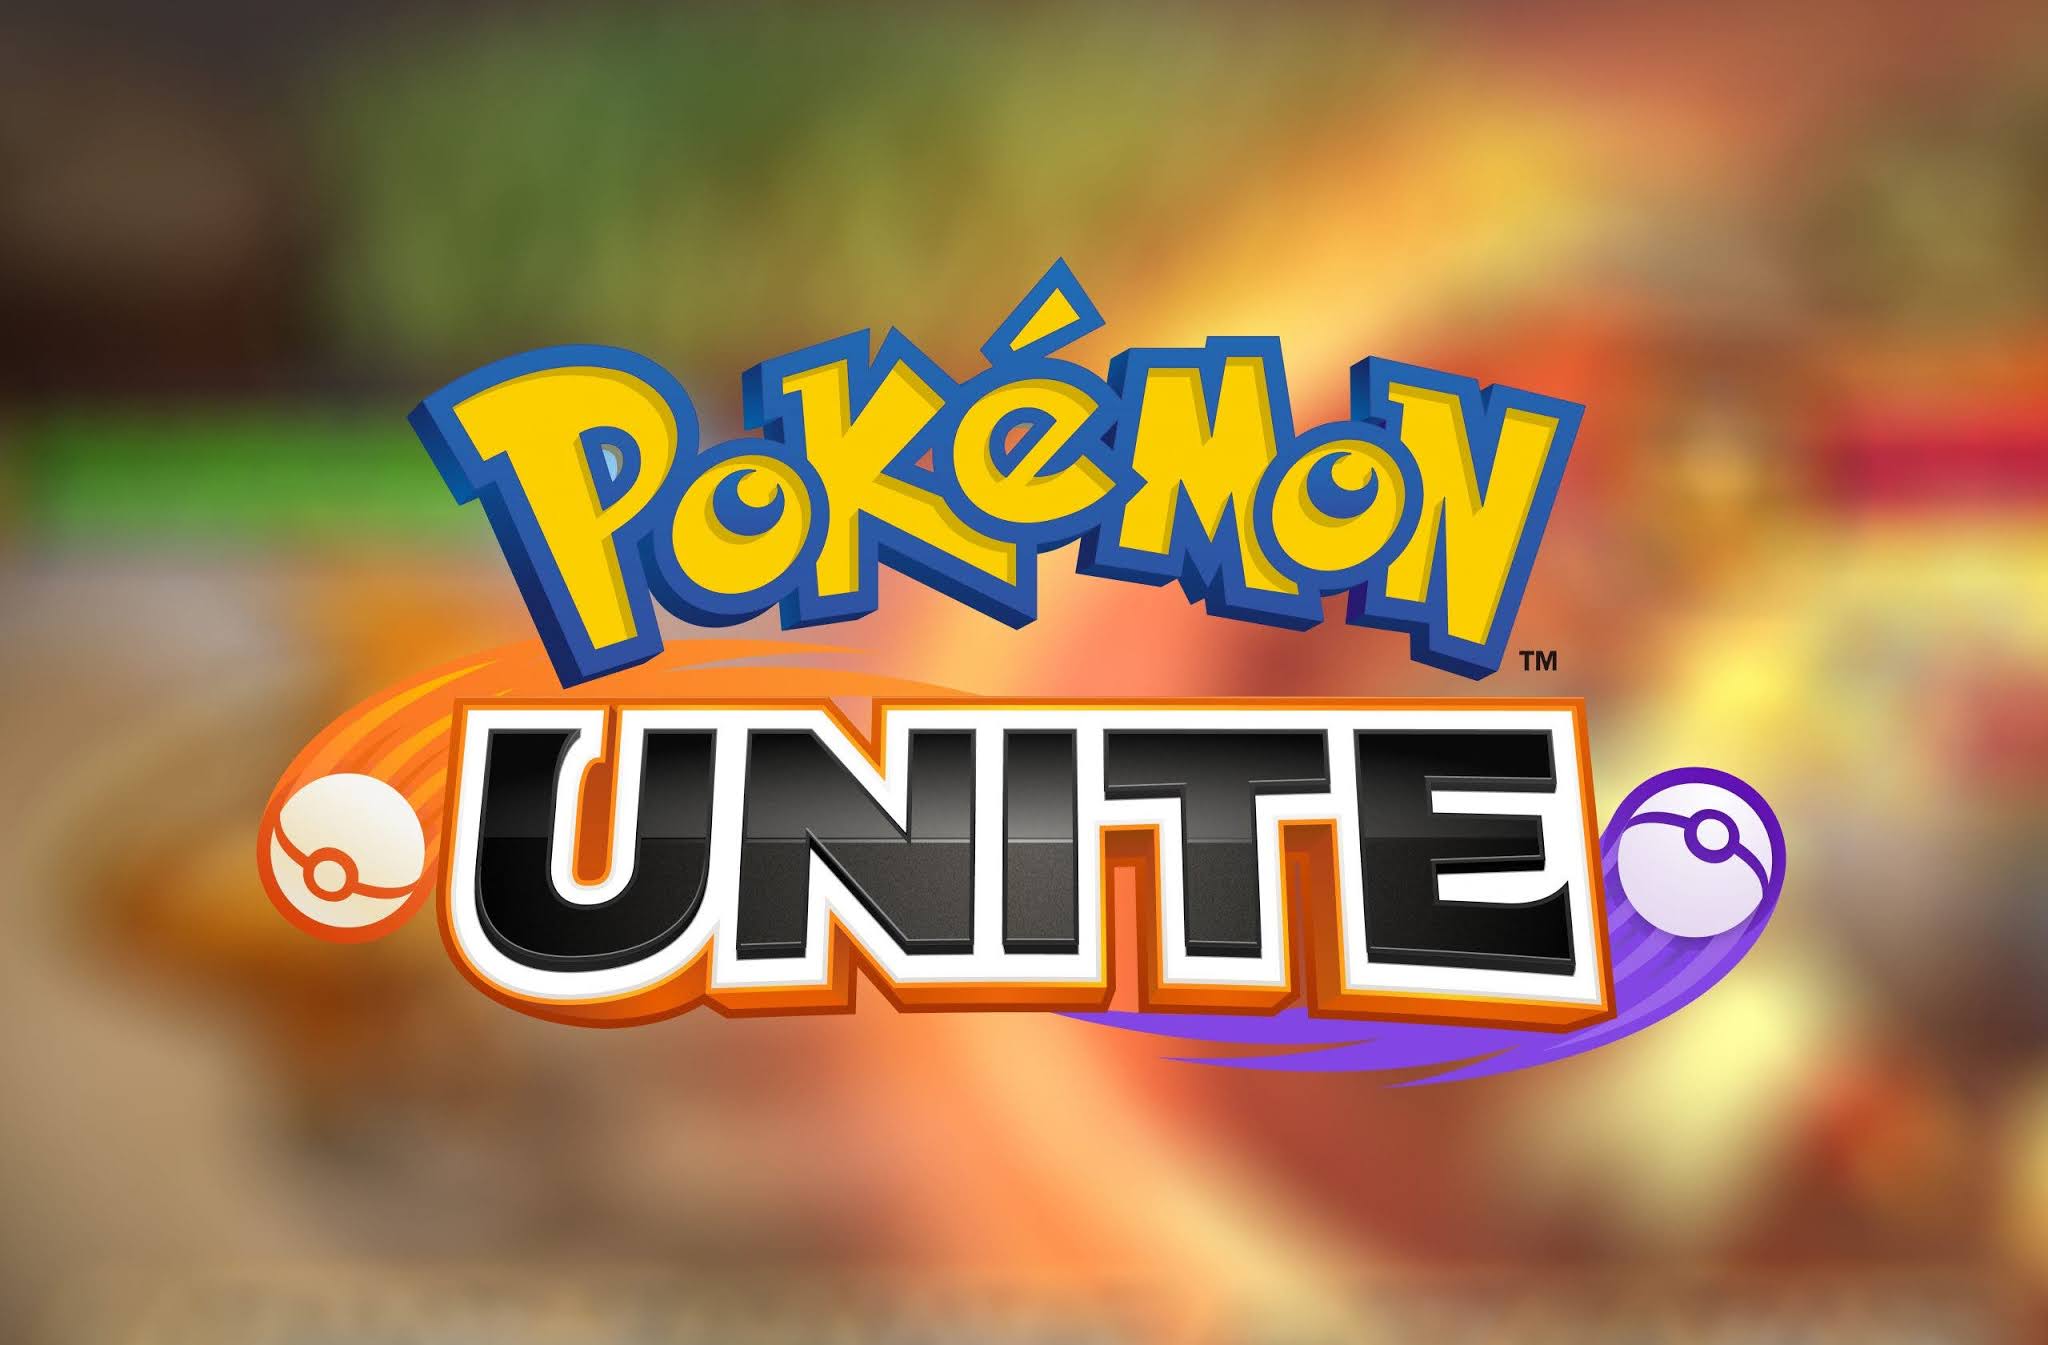 Pokémon Unite, jogo grátis para celular, agora está em português